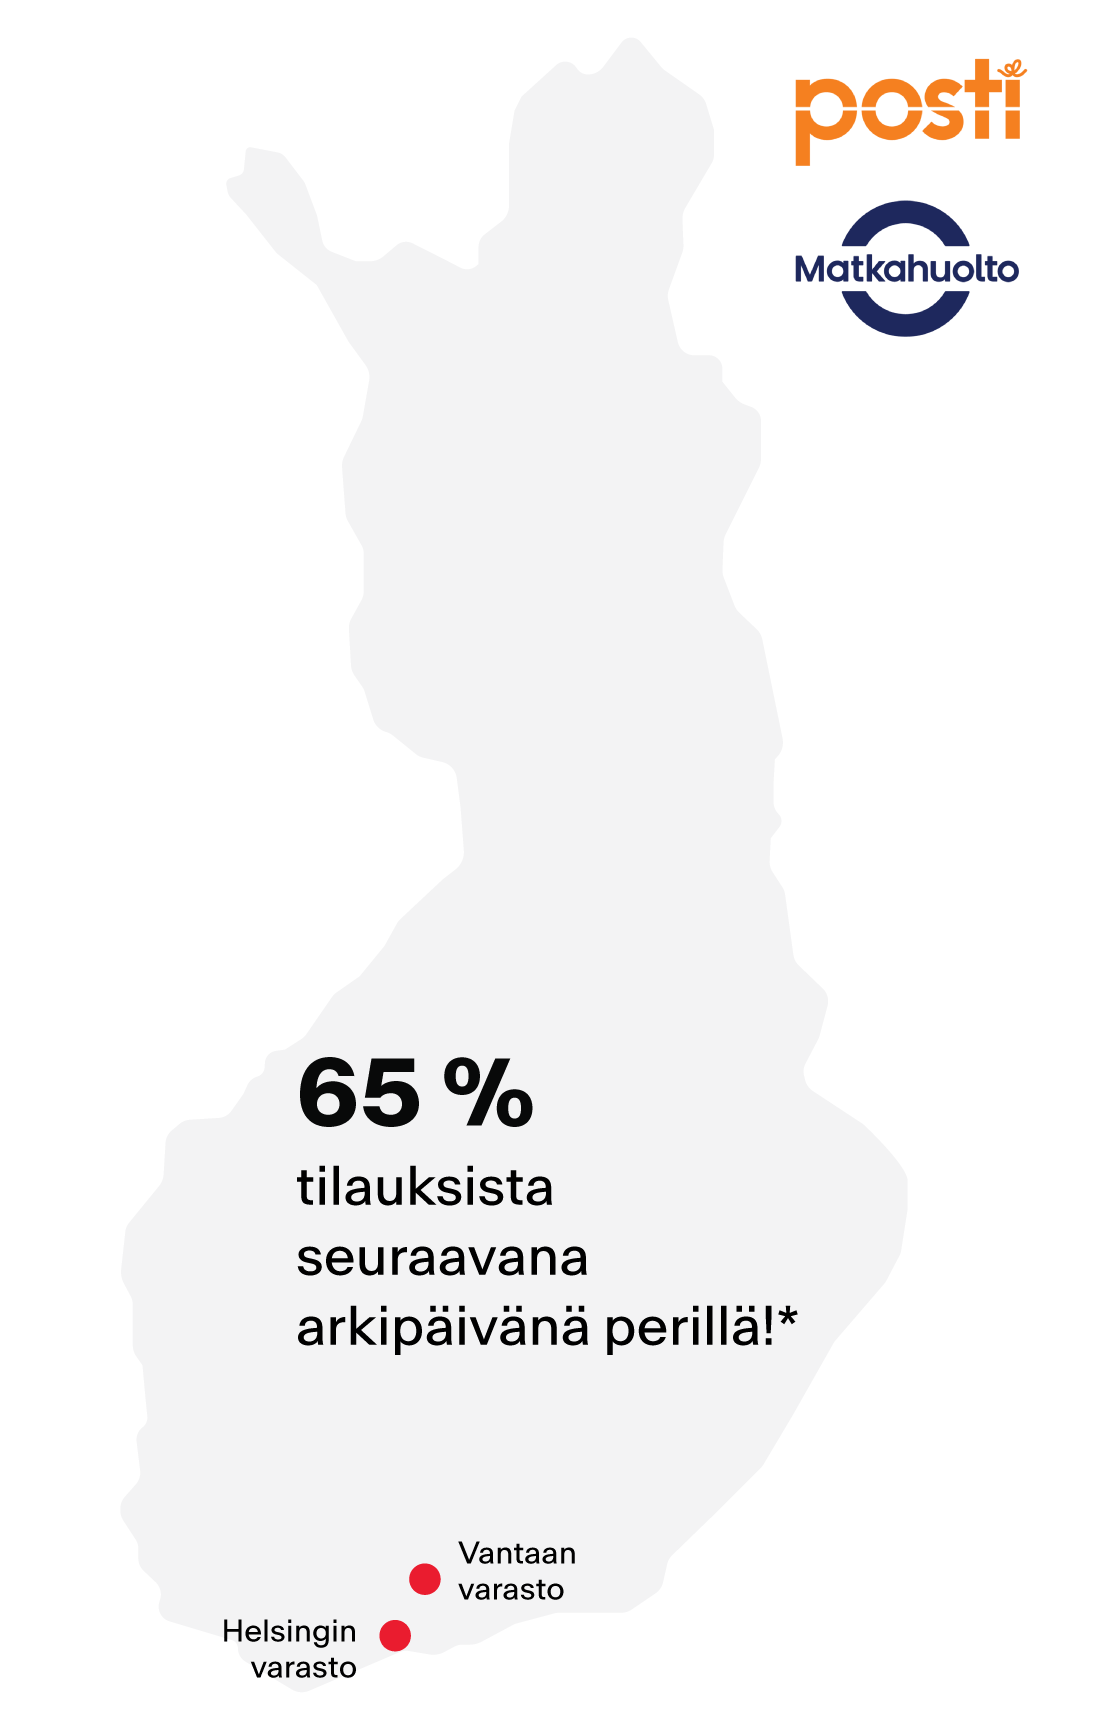 Suomen kartta sekä Postin ja Matkahuollon logot